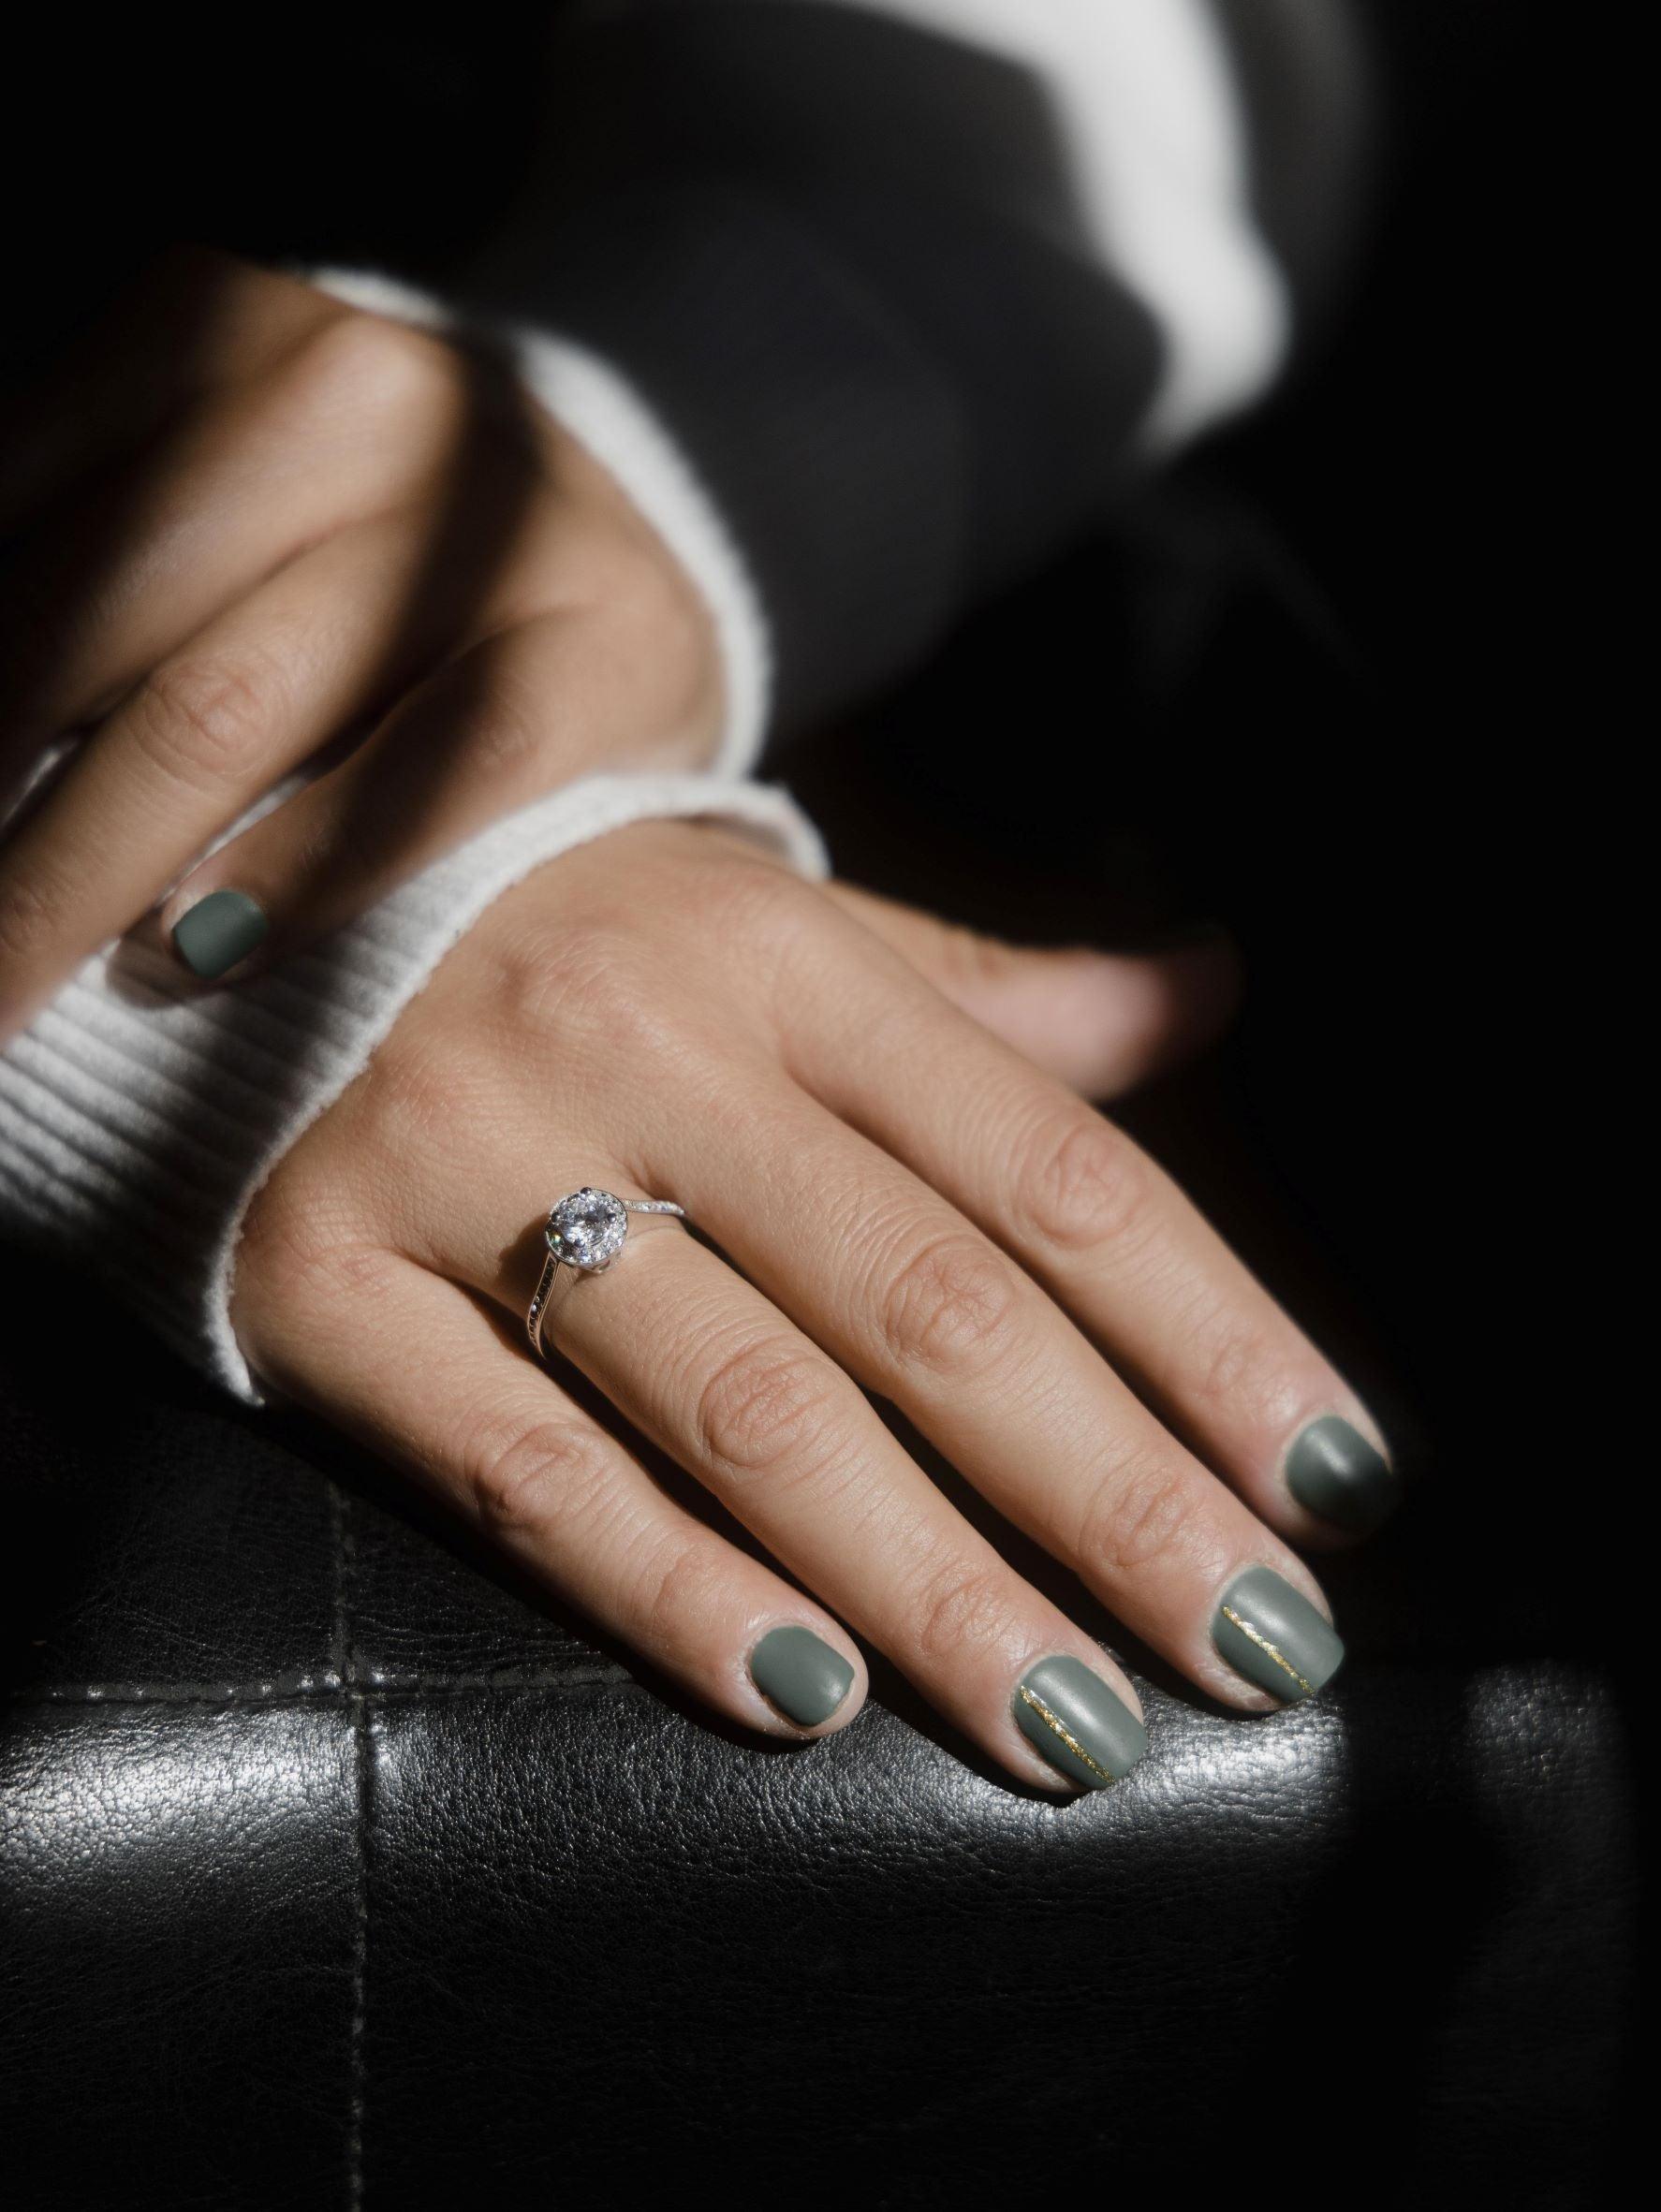 Μονόπετρο δαχτυλίδι ροζέτα με κεντρικό διαμάντι round cut, πλαίνές πέτρες από μικρότερα διαμάντια και στρογγυλό καστόνι, κατασκευασμένο από λευκόχρυσο φορεμένο σε γυναικείο χέρι.